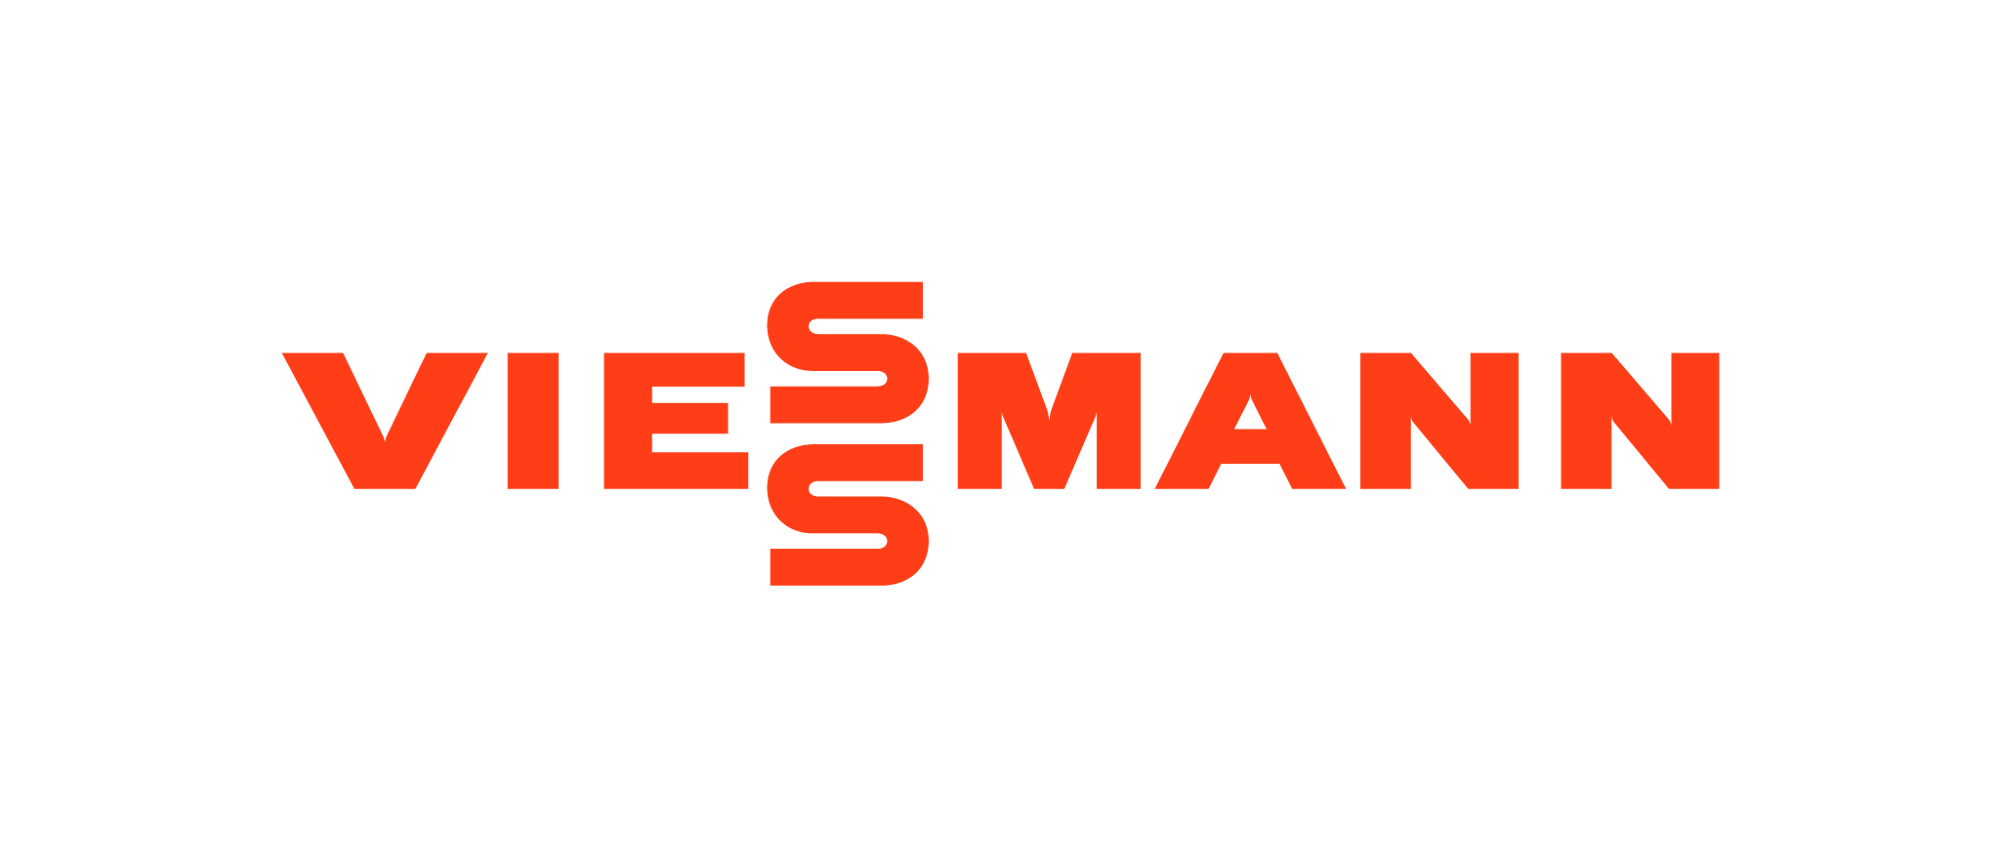 Viessmann - Logo